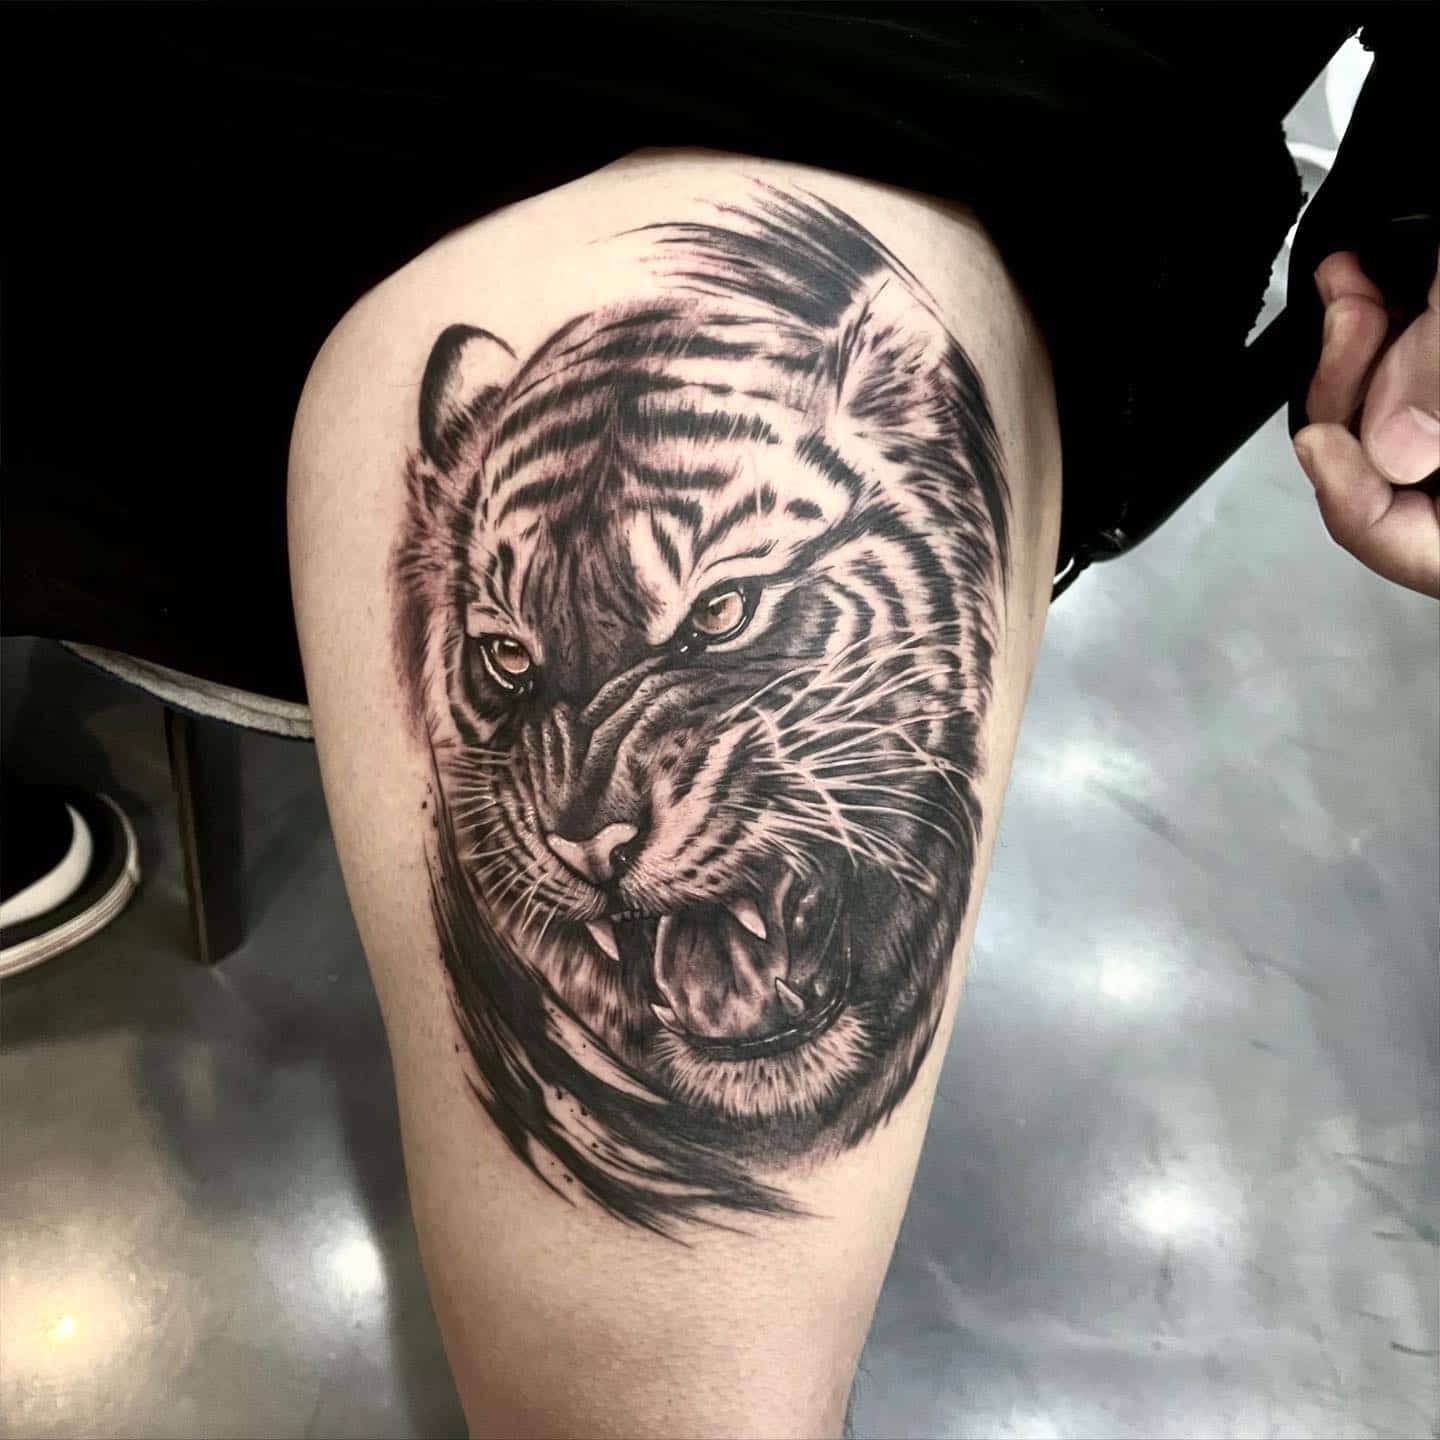 Tiger tattoo on legs by rica tattooer